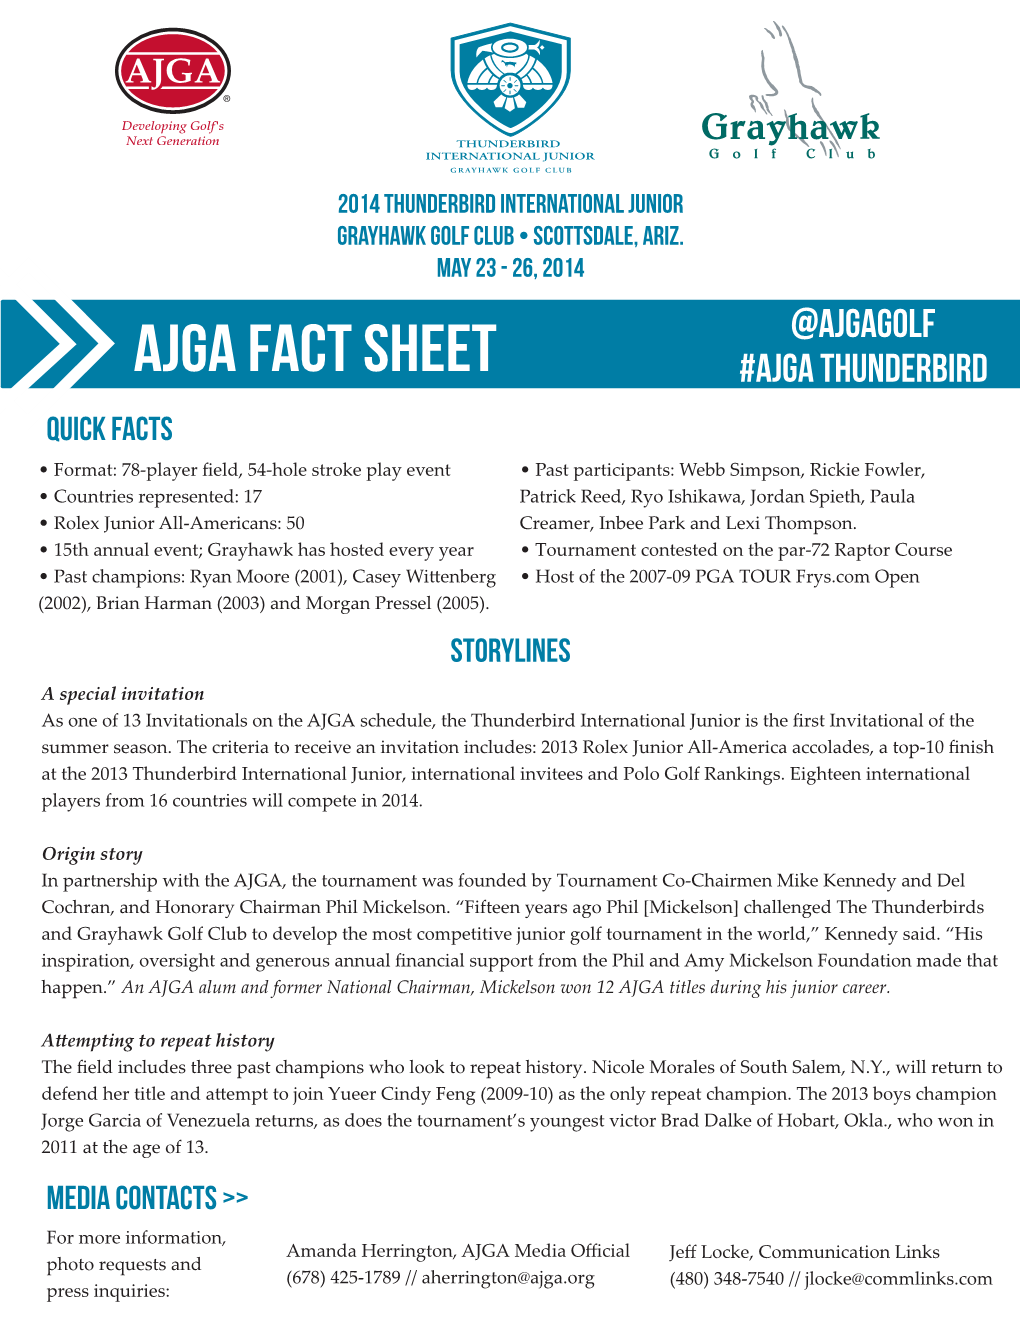 Ajga Fact Sheet